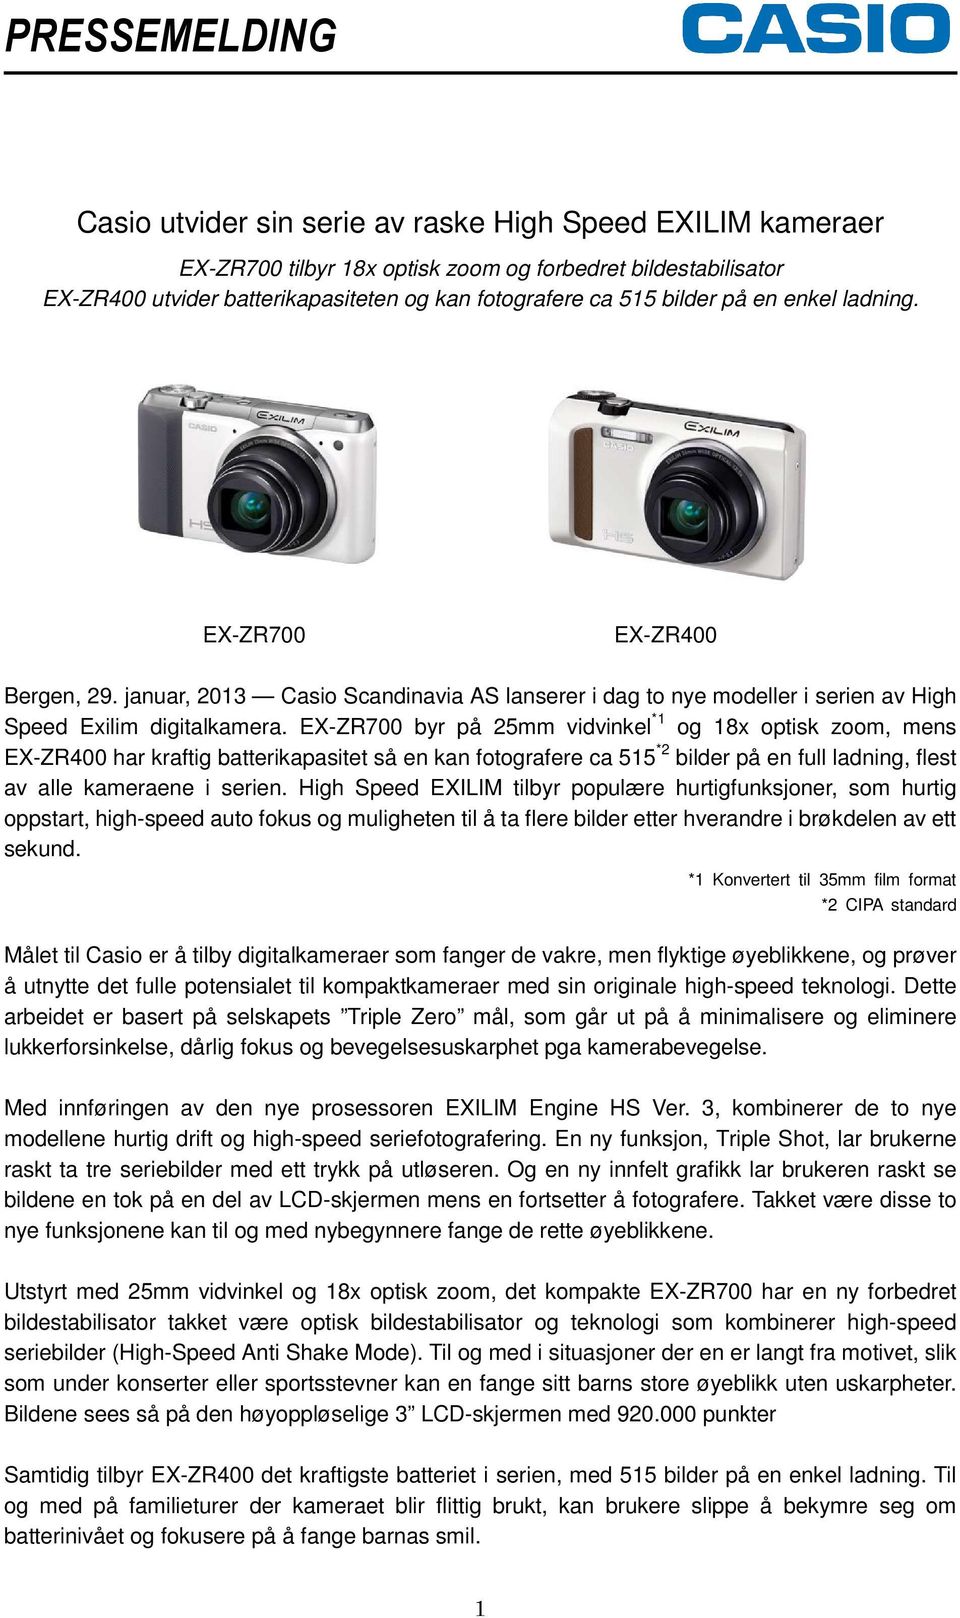 EX-ZR700 byr på 25mm vidvinkel *1 og 18x optisk zoom, mens EX-ZR400 har kraftig batterikapasitet så en kan fotografere ca 515 *2 bilder på en full ladning, flest av alle kameraene i serien.